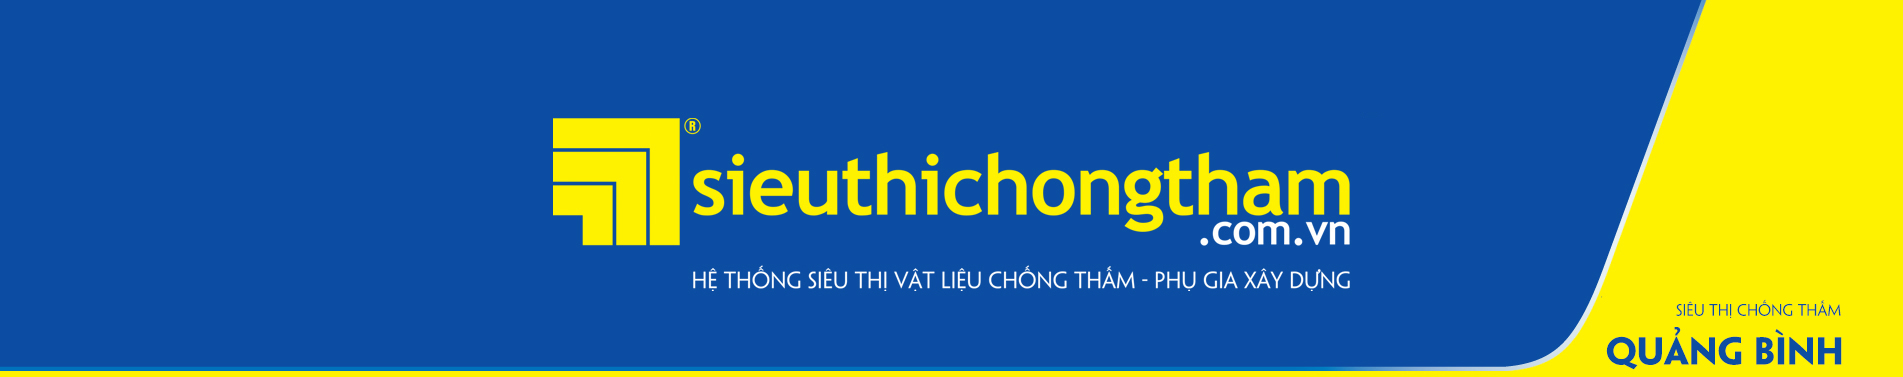 Sieu Thi Chong Tham Quang Binh